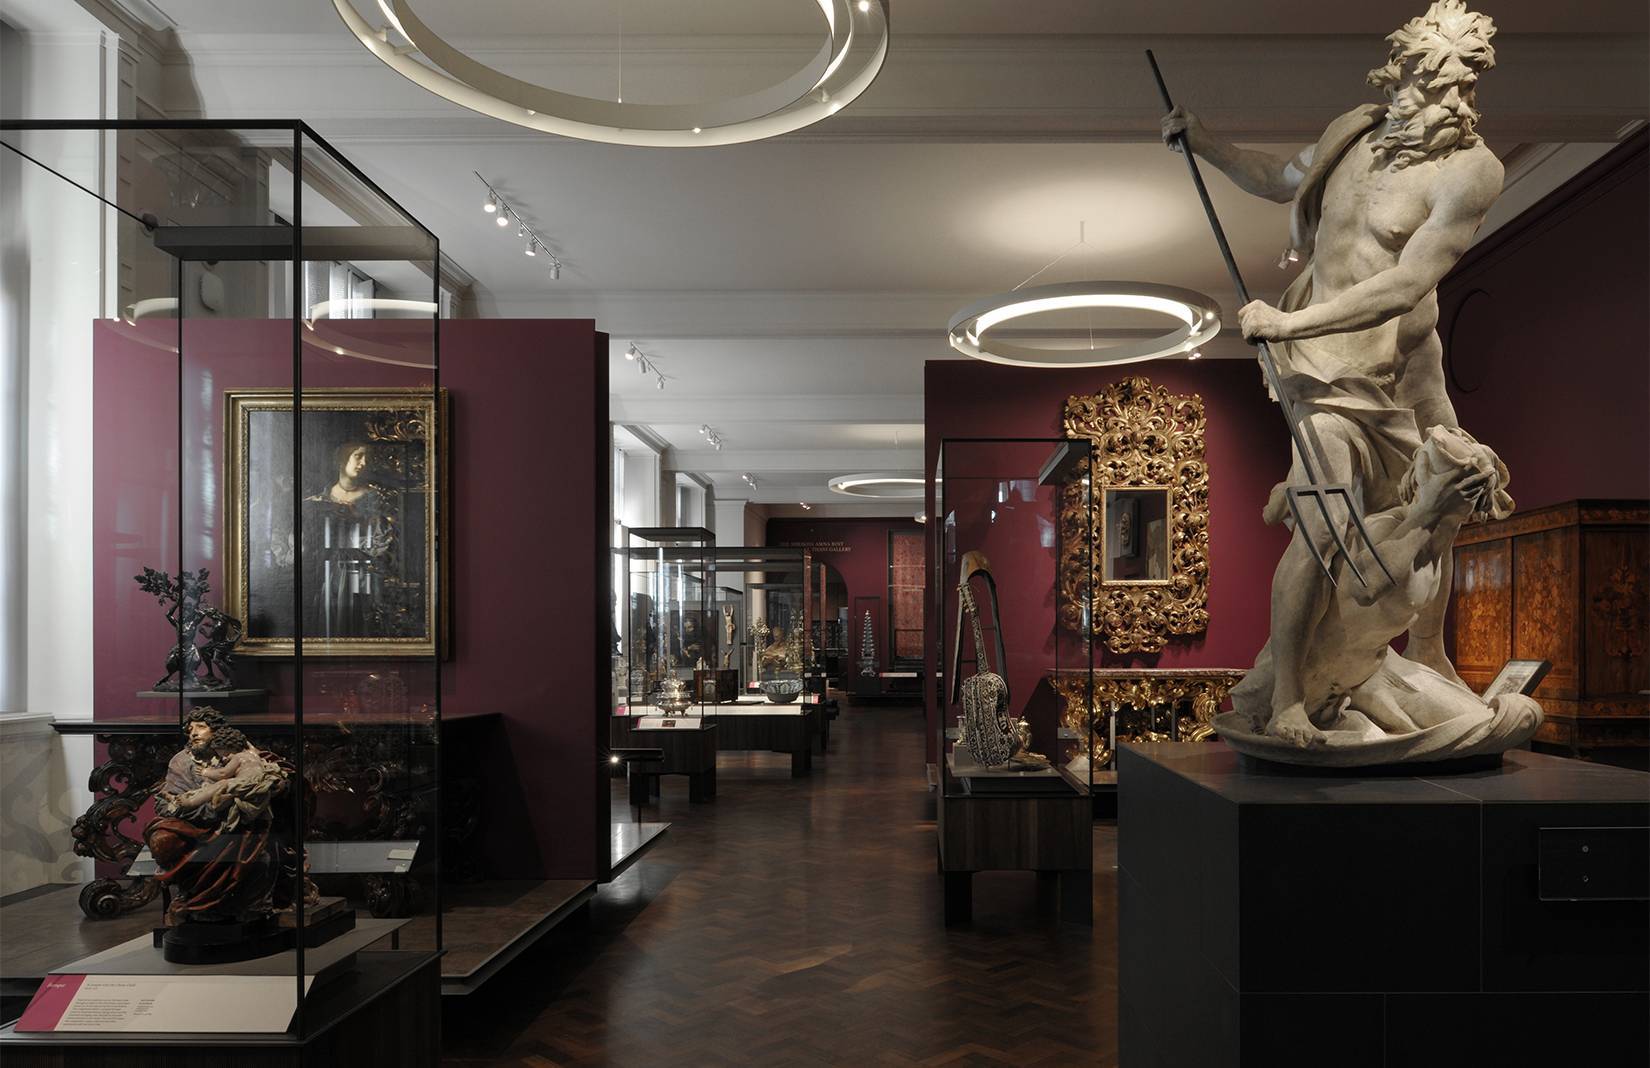 Музей виктории и альберта в лондоне: обзор экспозиции